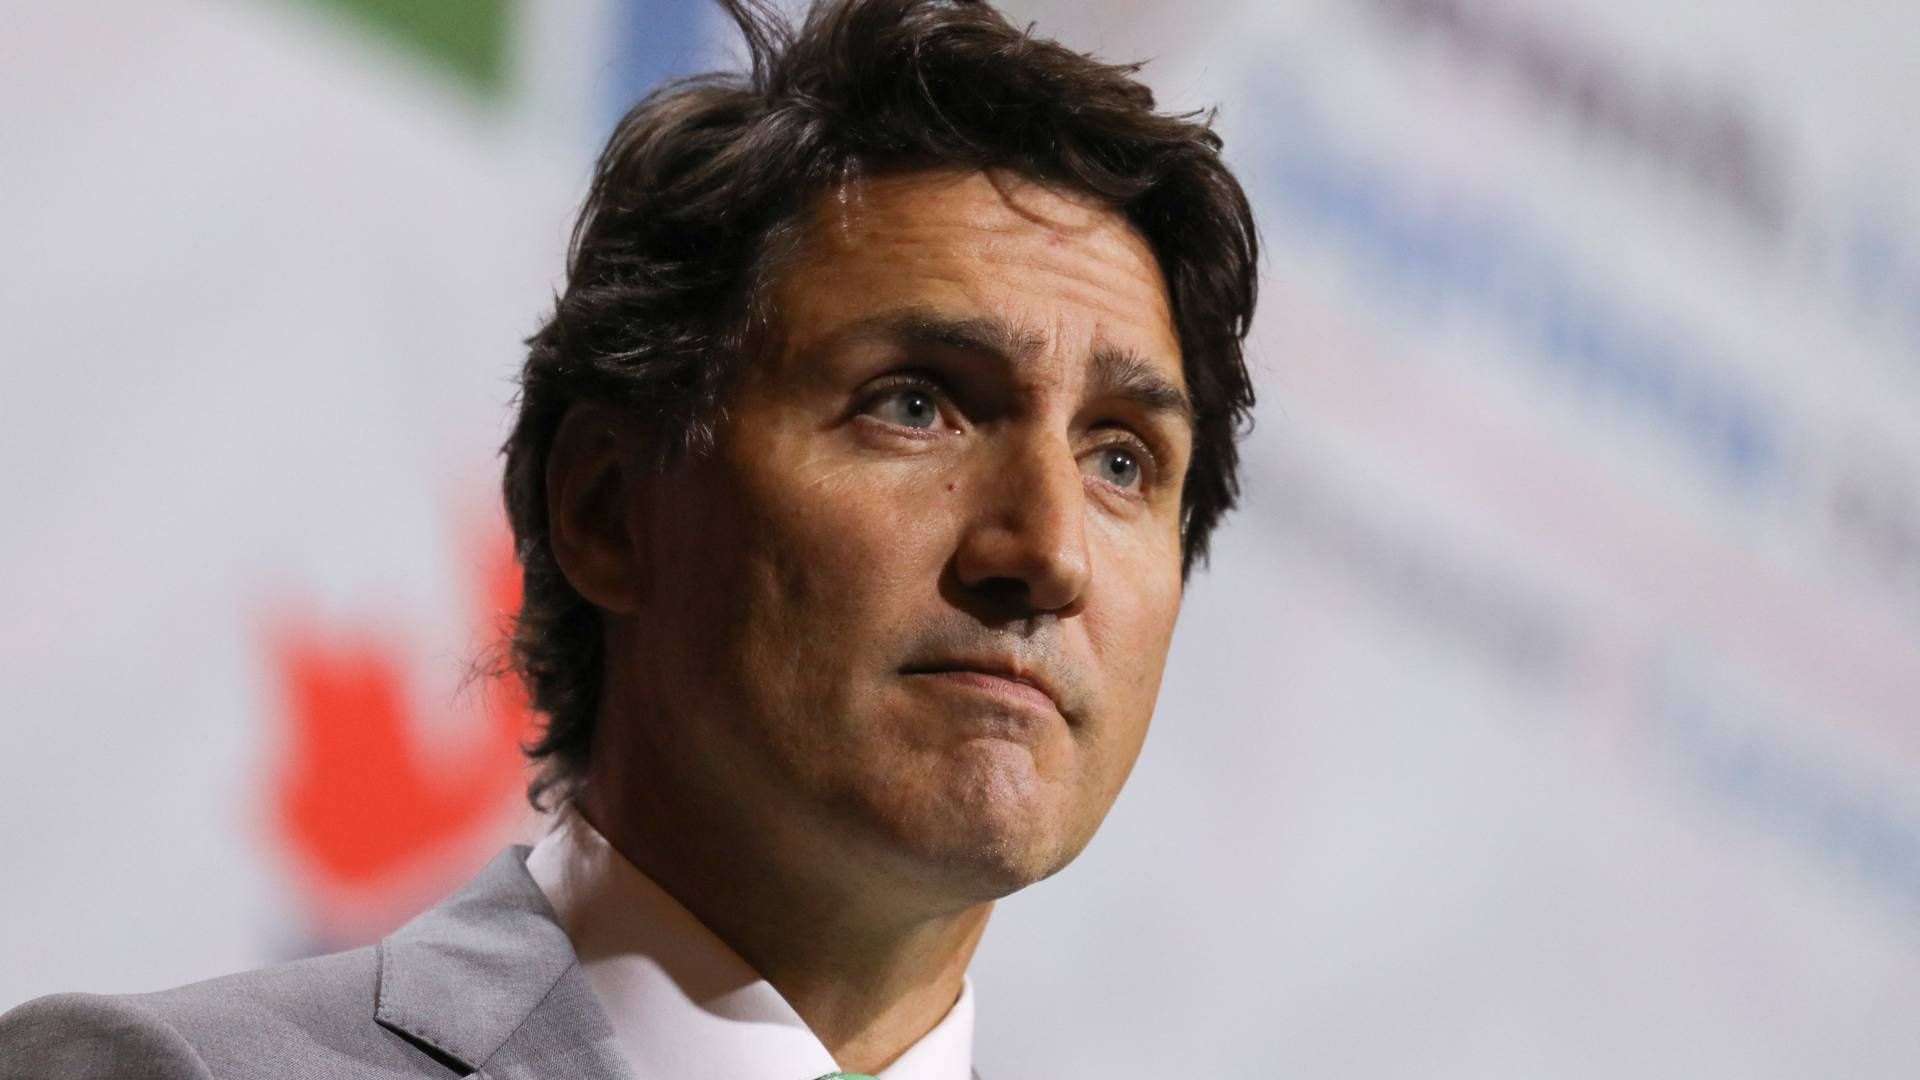 Den canadiske regering med premierminister Justin Trudeau i spidsen har ønsket at få undersøgt, om Meta handler i strid med konkurrencelovgivning, når de blokerer for nyheder fra canadiske medier. | Foto: Chris Helgren